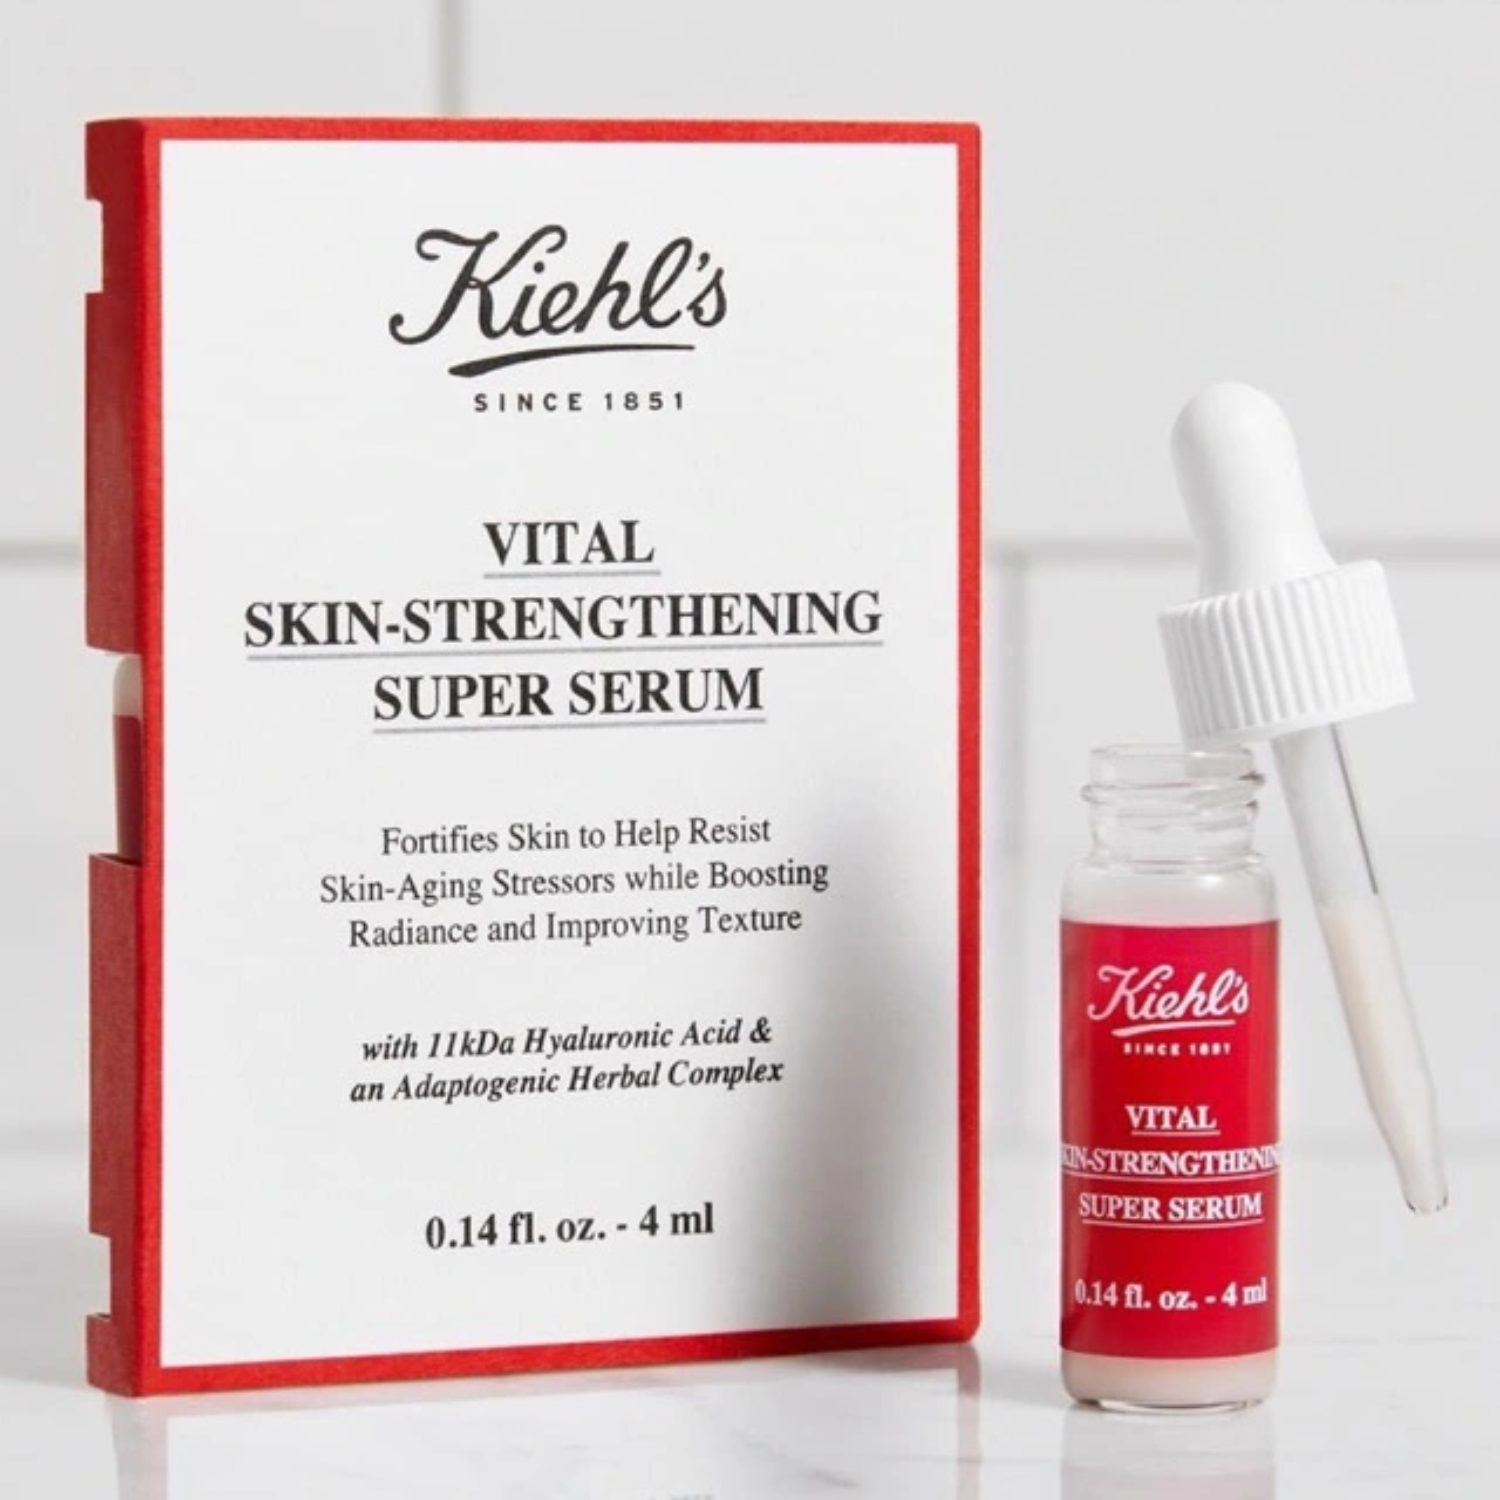 Tinh chất Kiehls Vital Skin Strengthening Super Serum 4ml